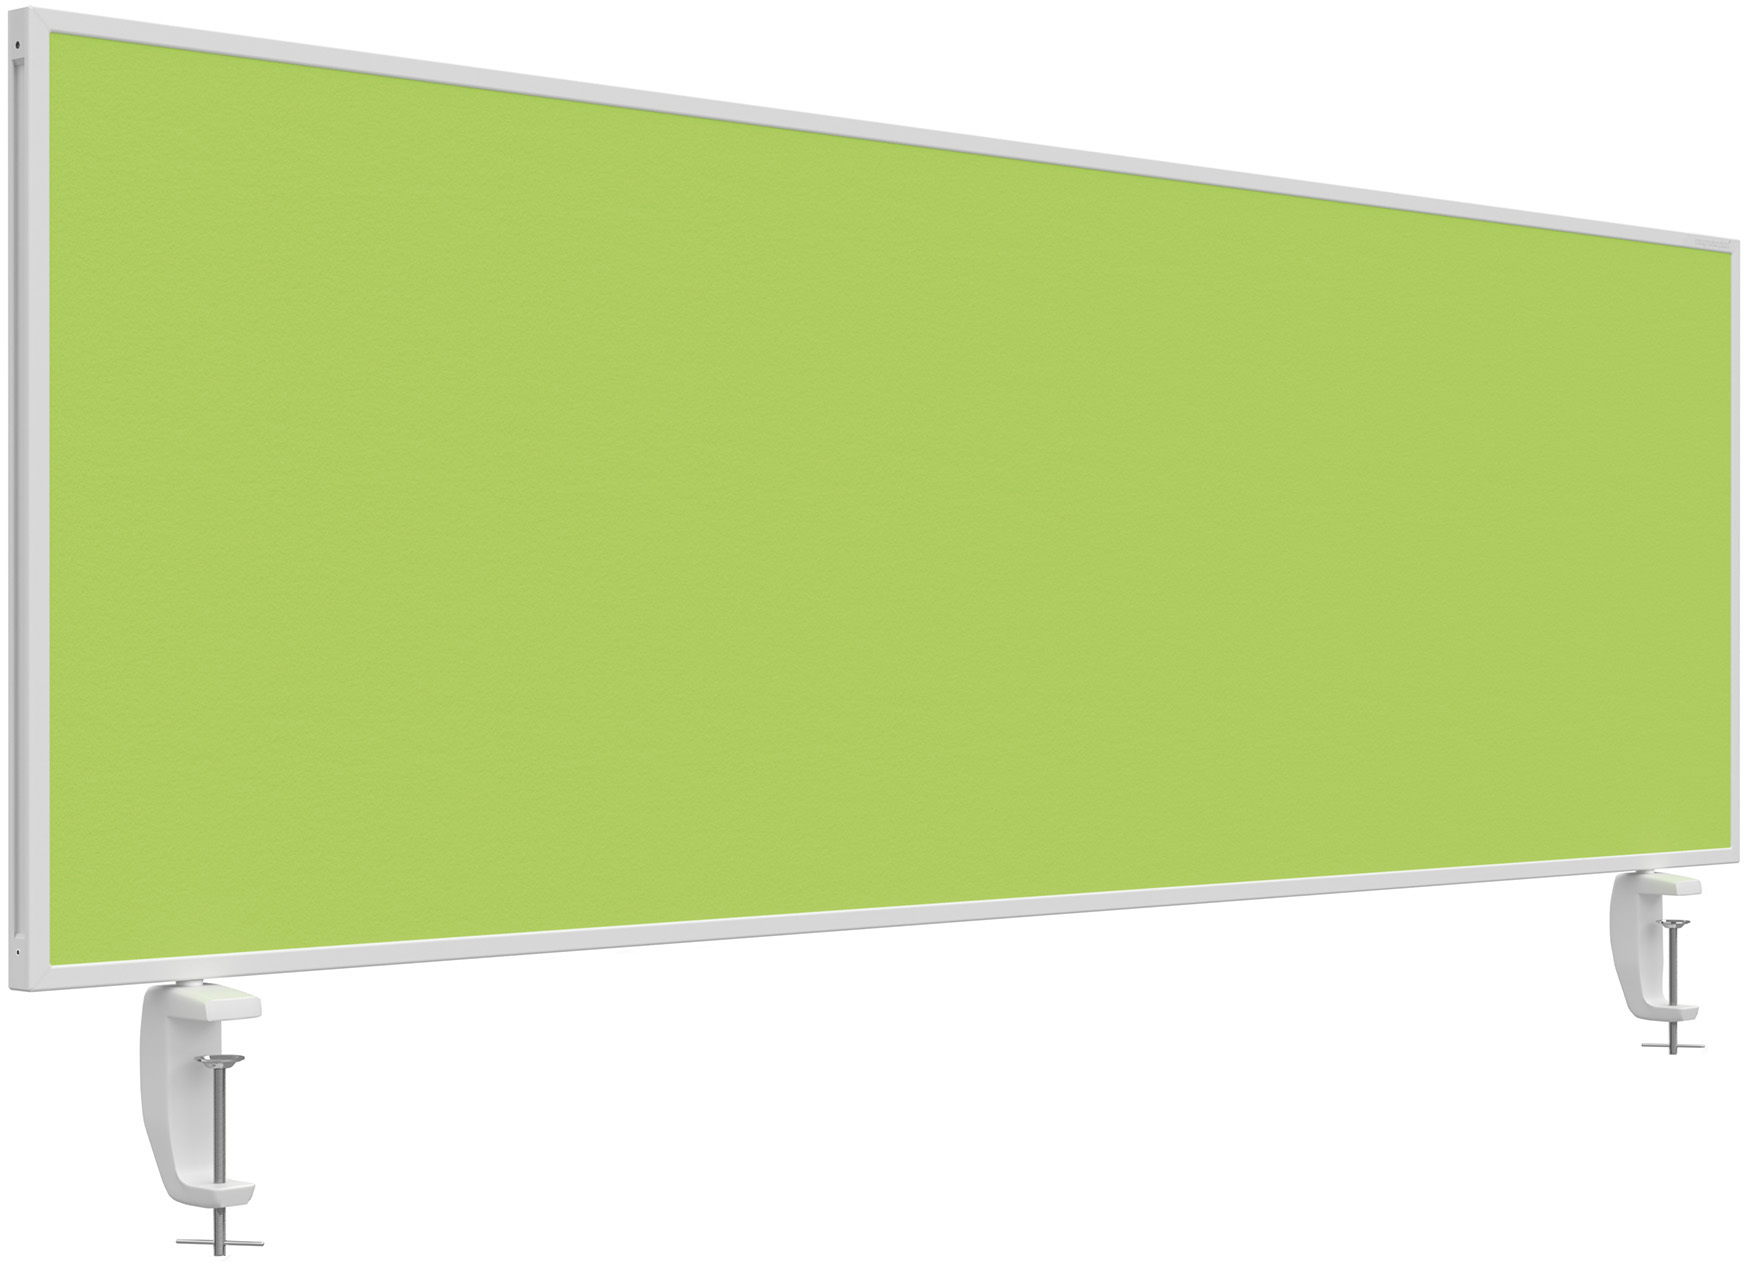 MAGNETOPLAN Tischtrennwand VarioPin 1116005 grün 1600x500mm